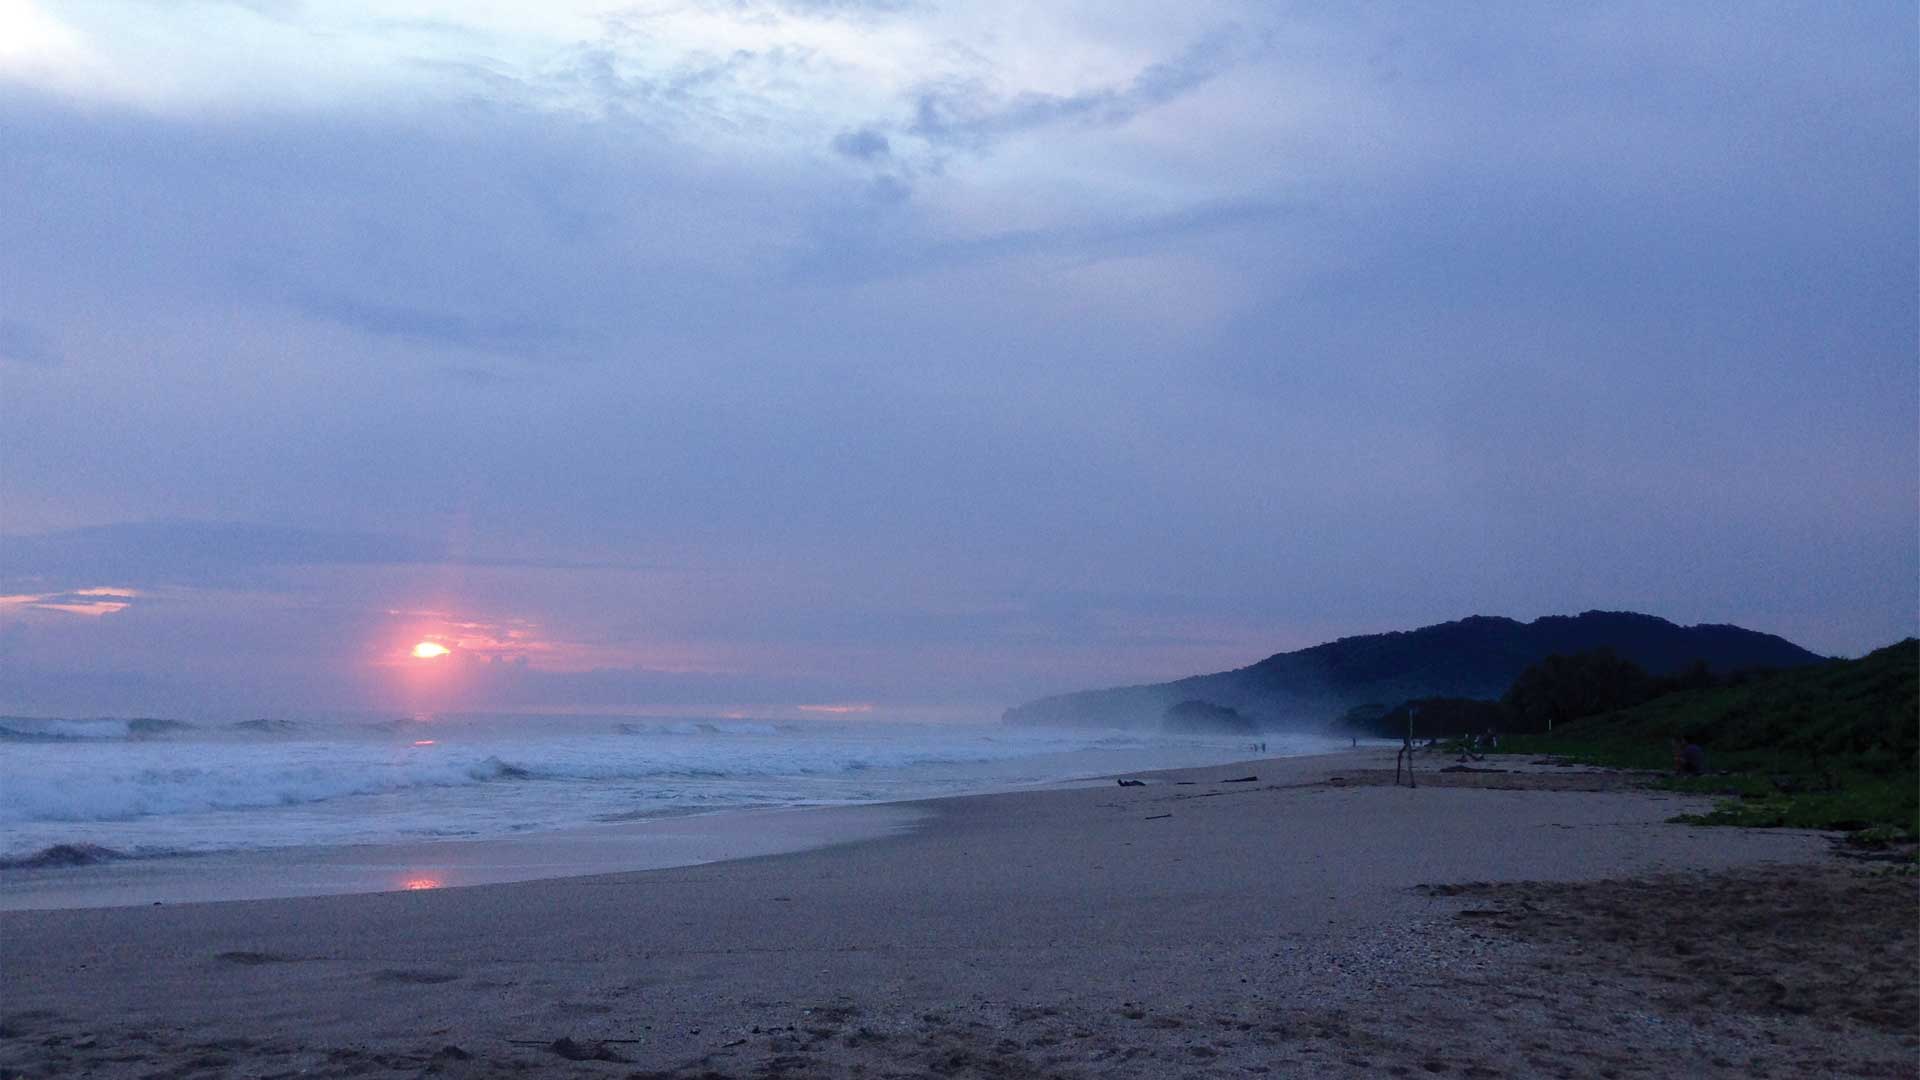 Dark misty sunset over Playa Grande empty wide sandy beach in Guanacaste, Costa Rica